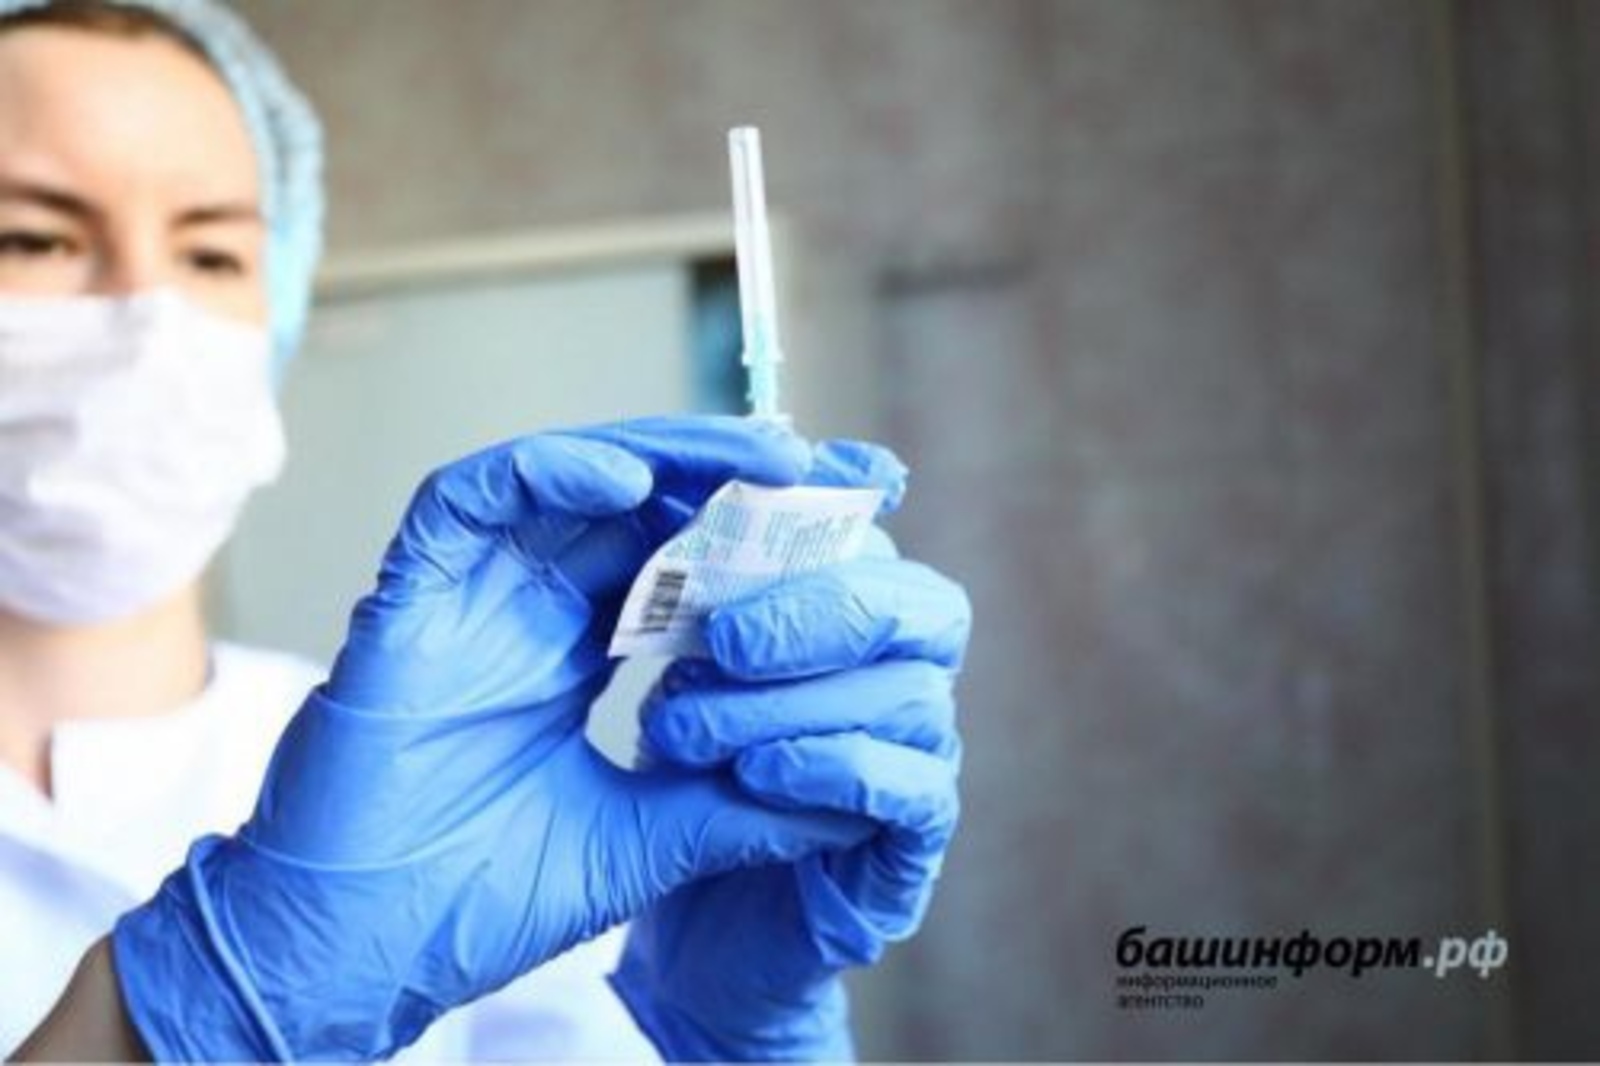 Тағы бер нисә тармаҡ хеҙмәткәрҙәре өсөн мотлаҡ вакцинация индерелә